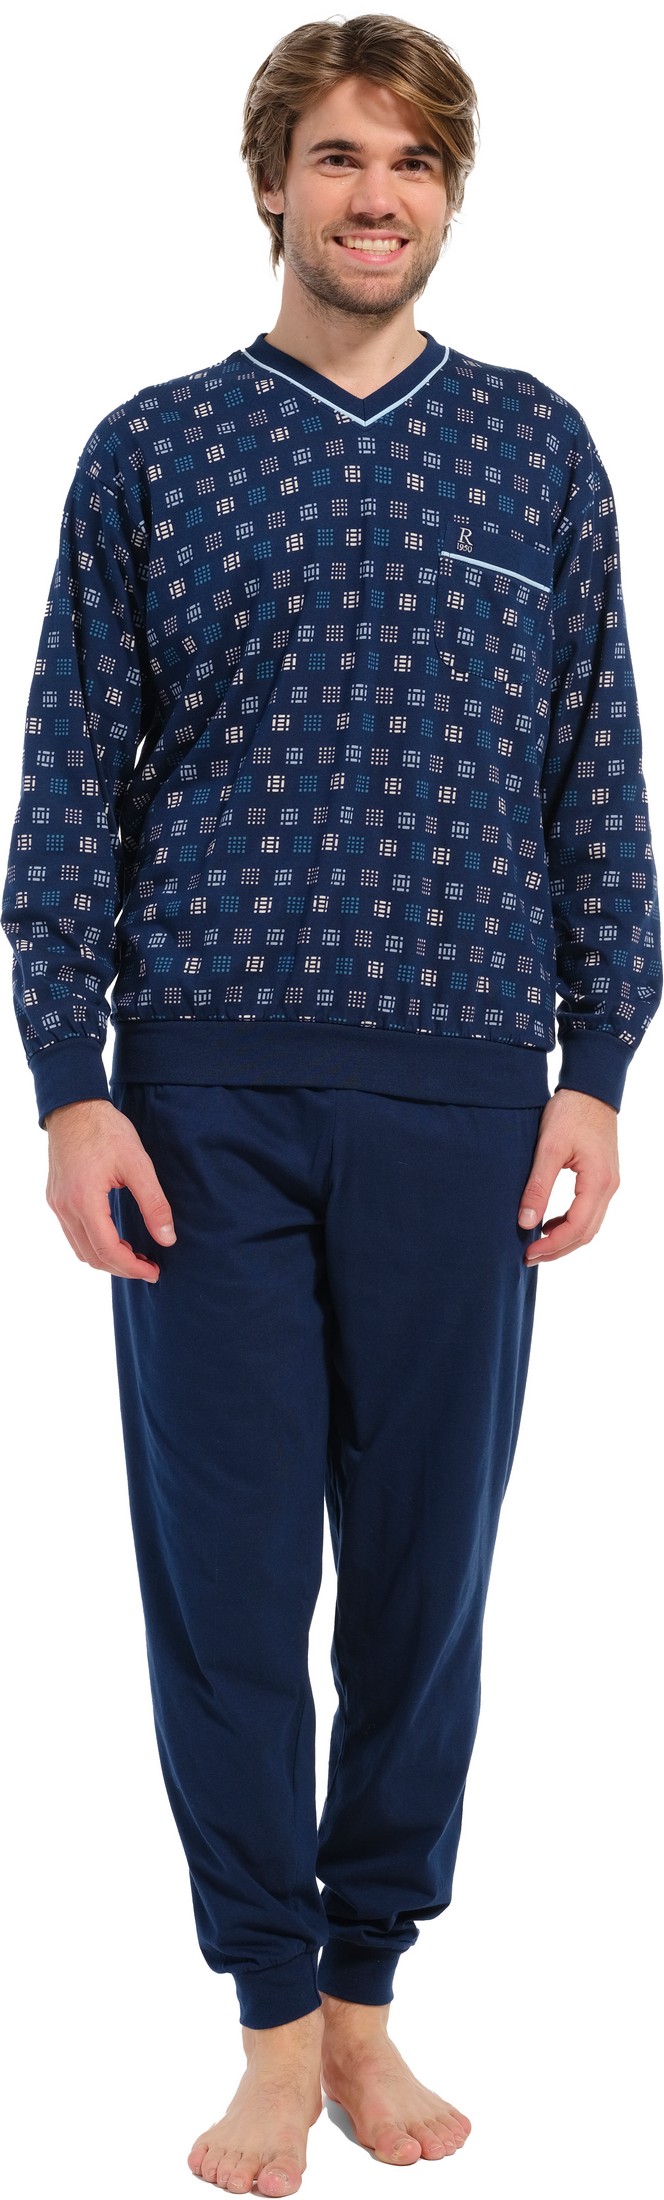 Robson tricot heren pyjama 27232-716-2 - Blauw - M/50